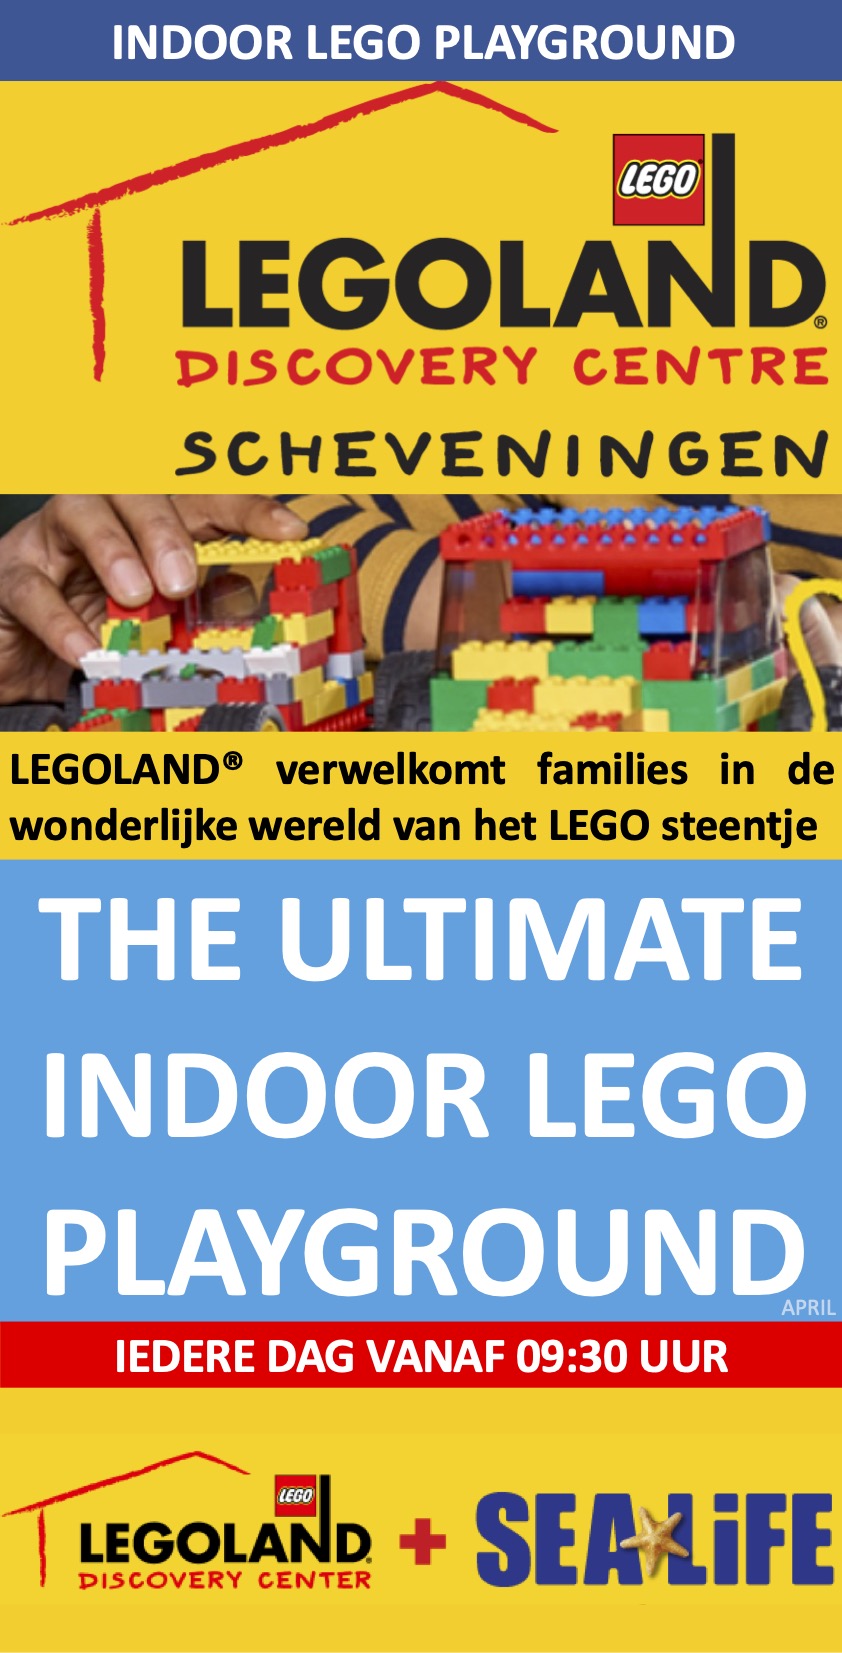 Legoland Discovery Centre Scheveningen NL Event april